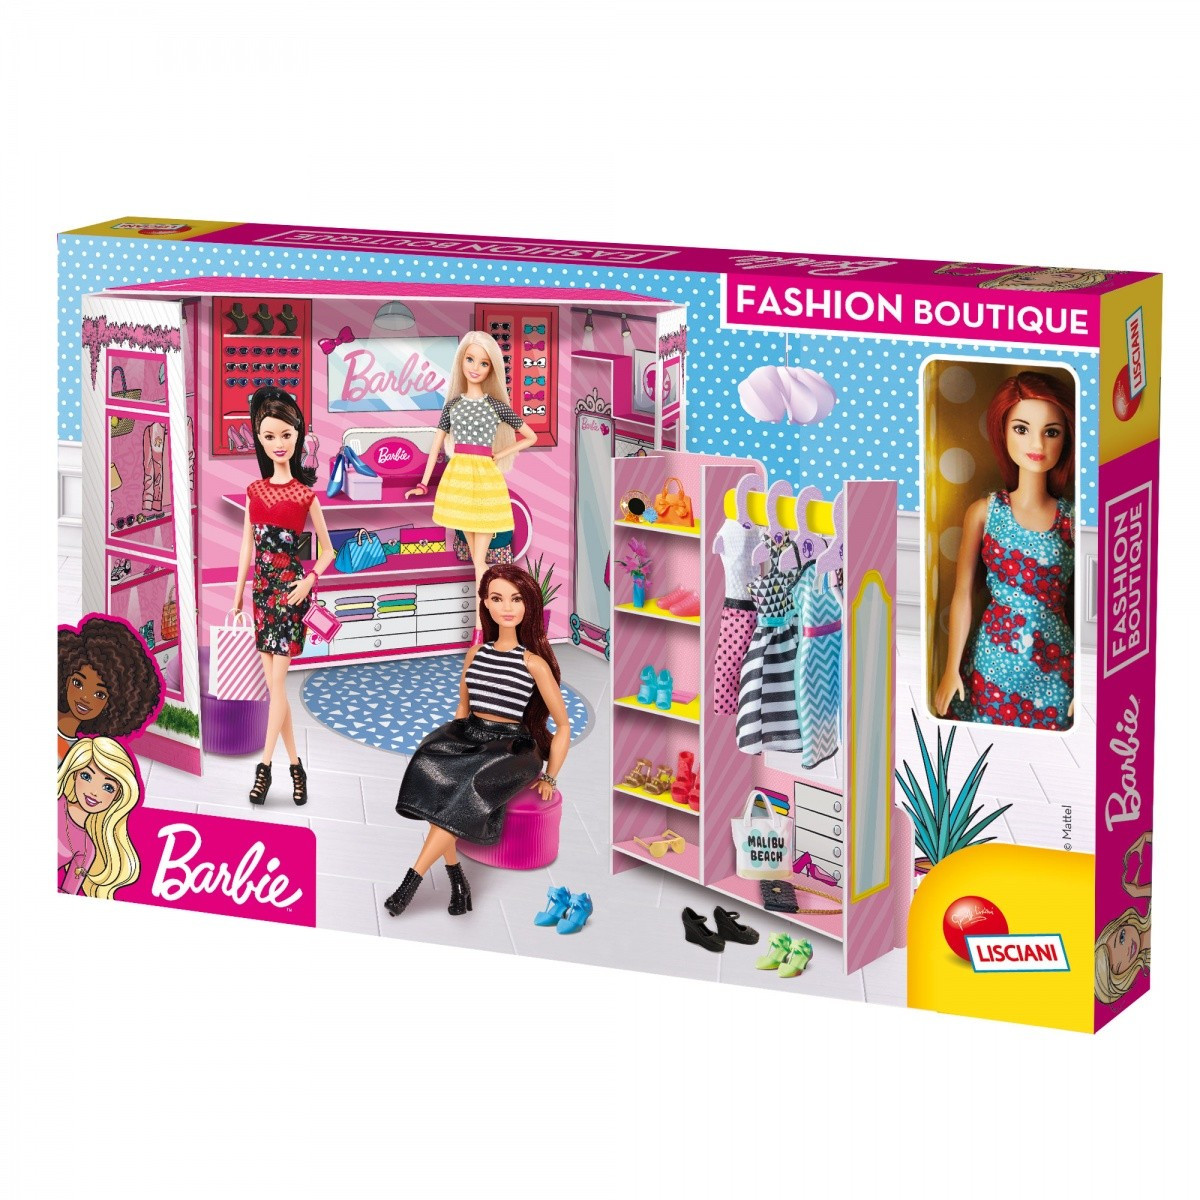 Obraz przedstawiający Lisciani Barbie Fashion Boutique z lalką